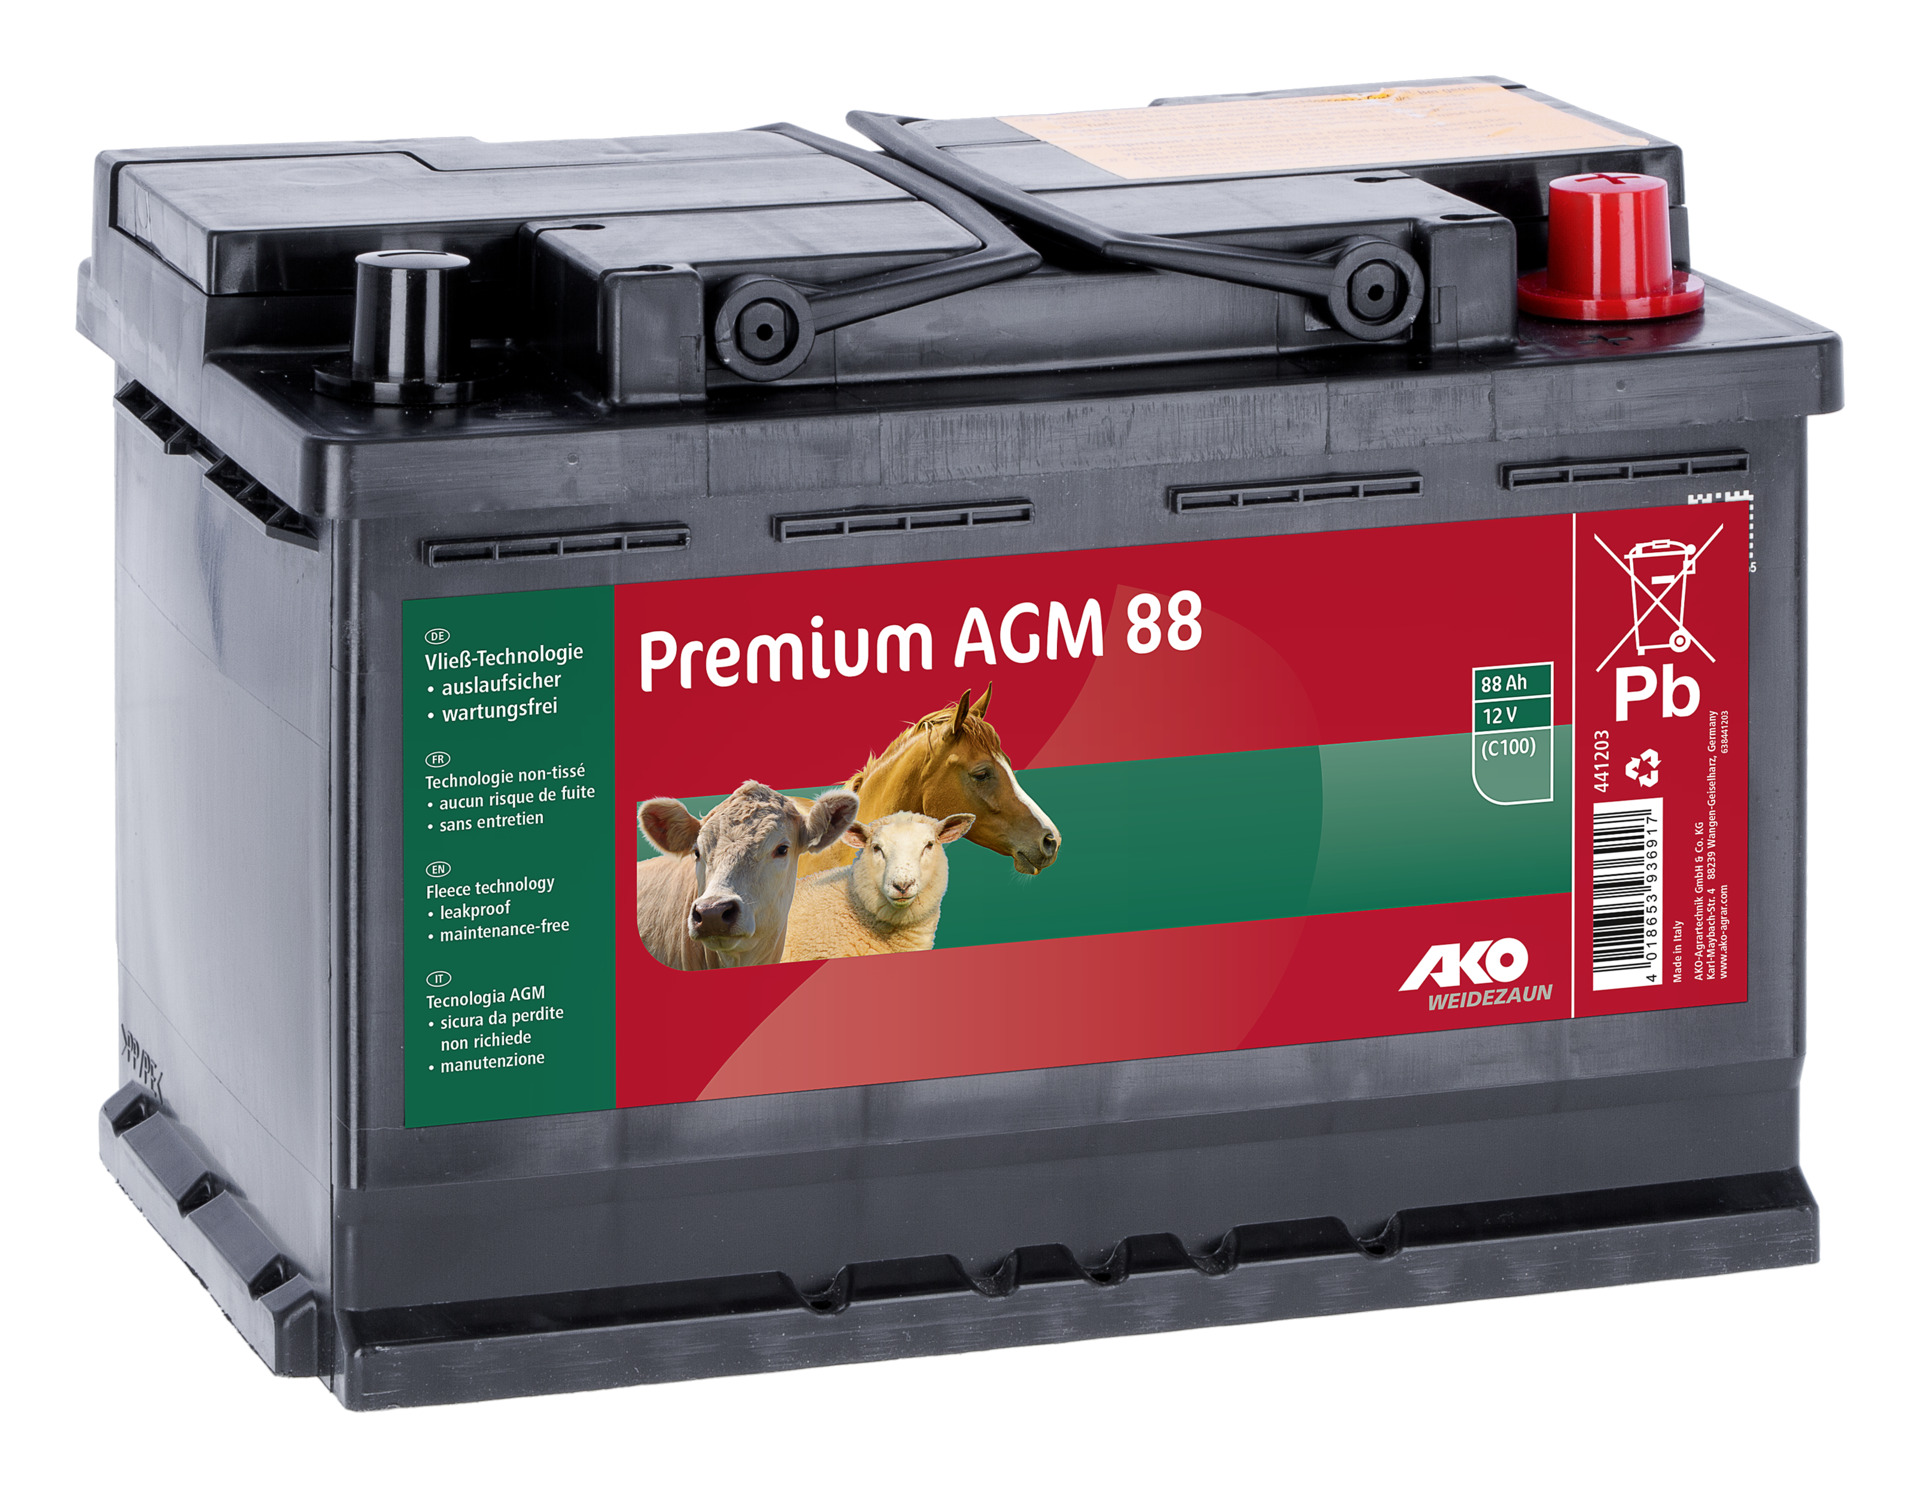 AKO Premium AGM Batterie 88 AH